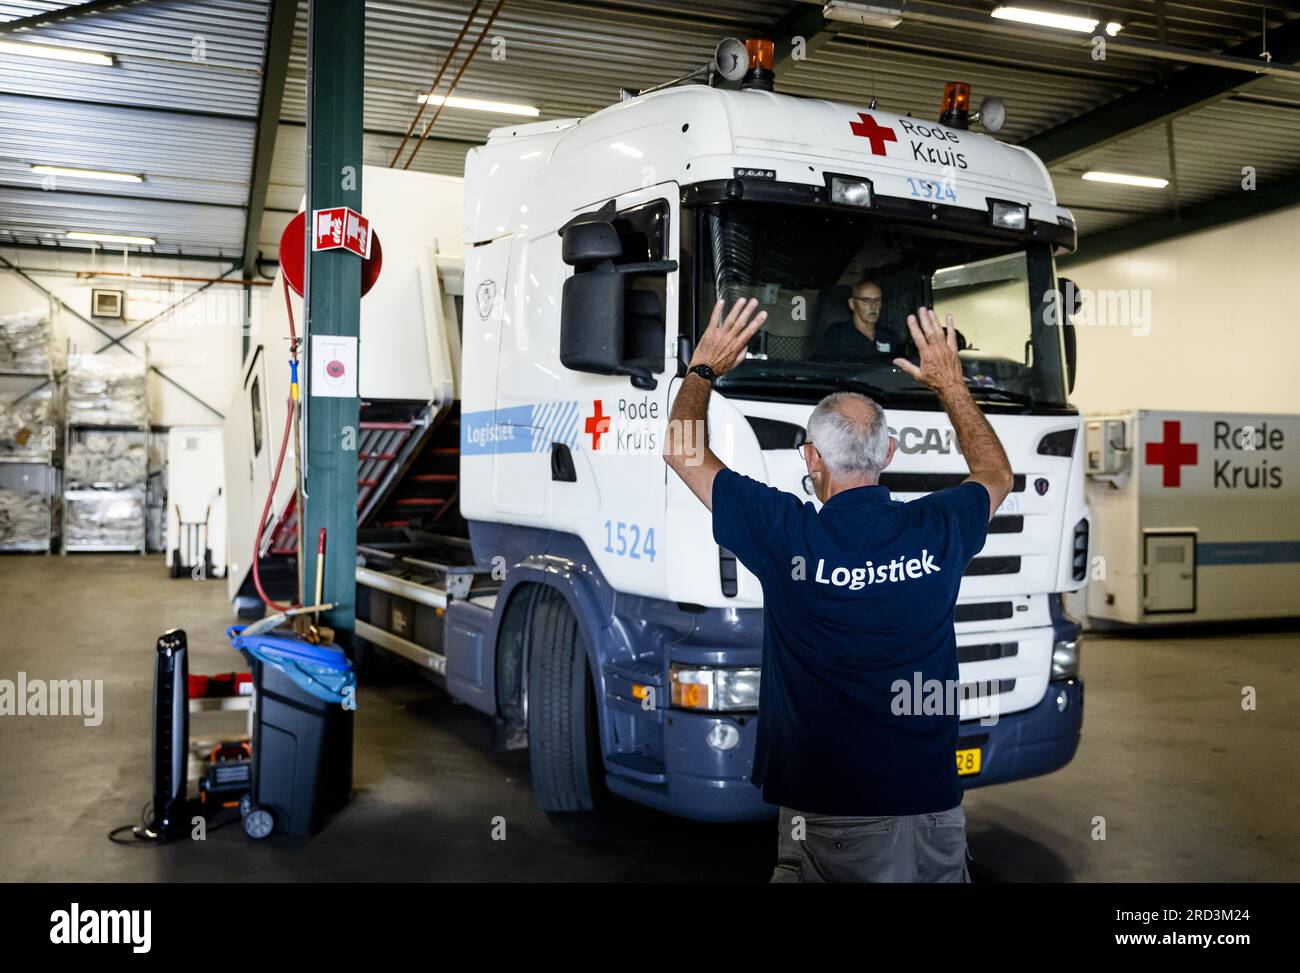 DUIVEN - Ein Logistikwagen in einem Lagerschuppen des Roten Kreuzes. Die Hilfsorganisation stellt regelmäßig Hilfsmaterial für Veranstaltungen, Krisenhilfe oder Zugausfälle bereit. ANP SEM VAN DER WAL niederlande raus - belgien raus Stockfoto